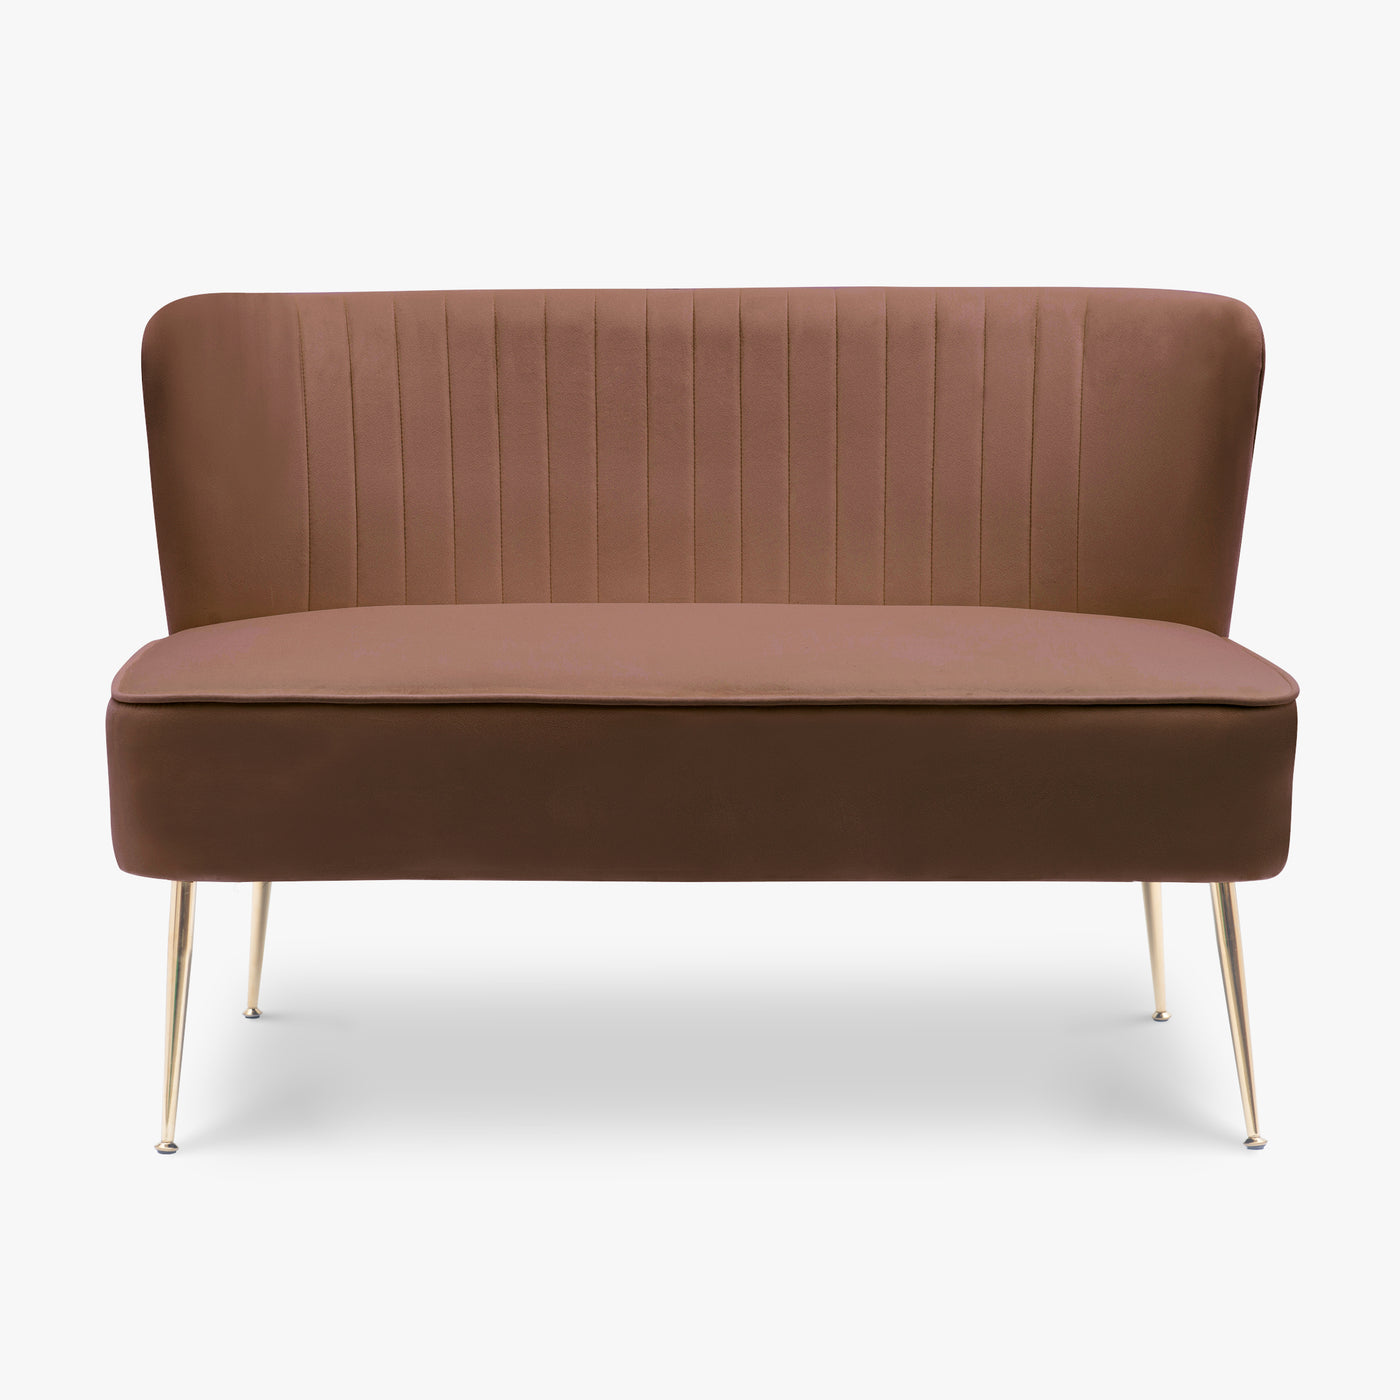 Phoebe 46" Wide Upholstered Velvet Love Seat Sofa